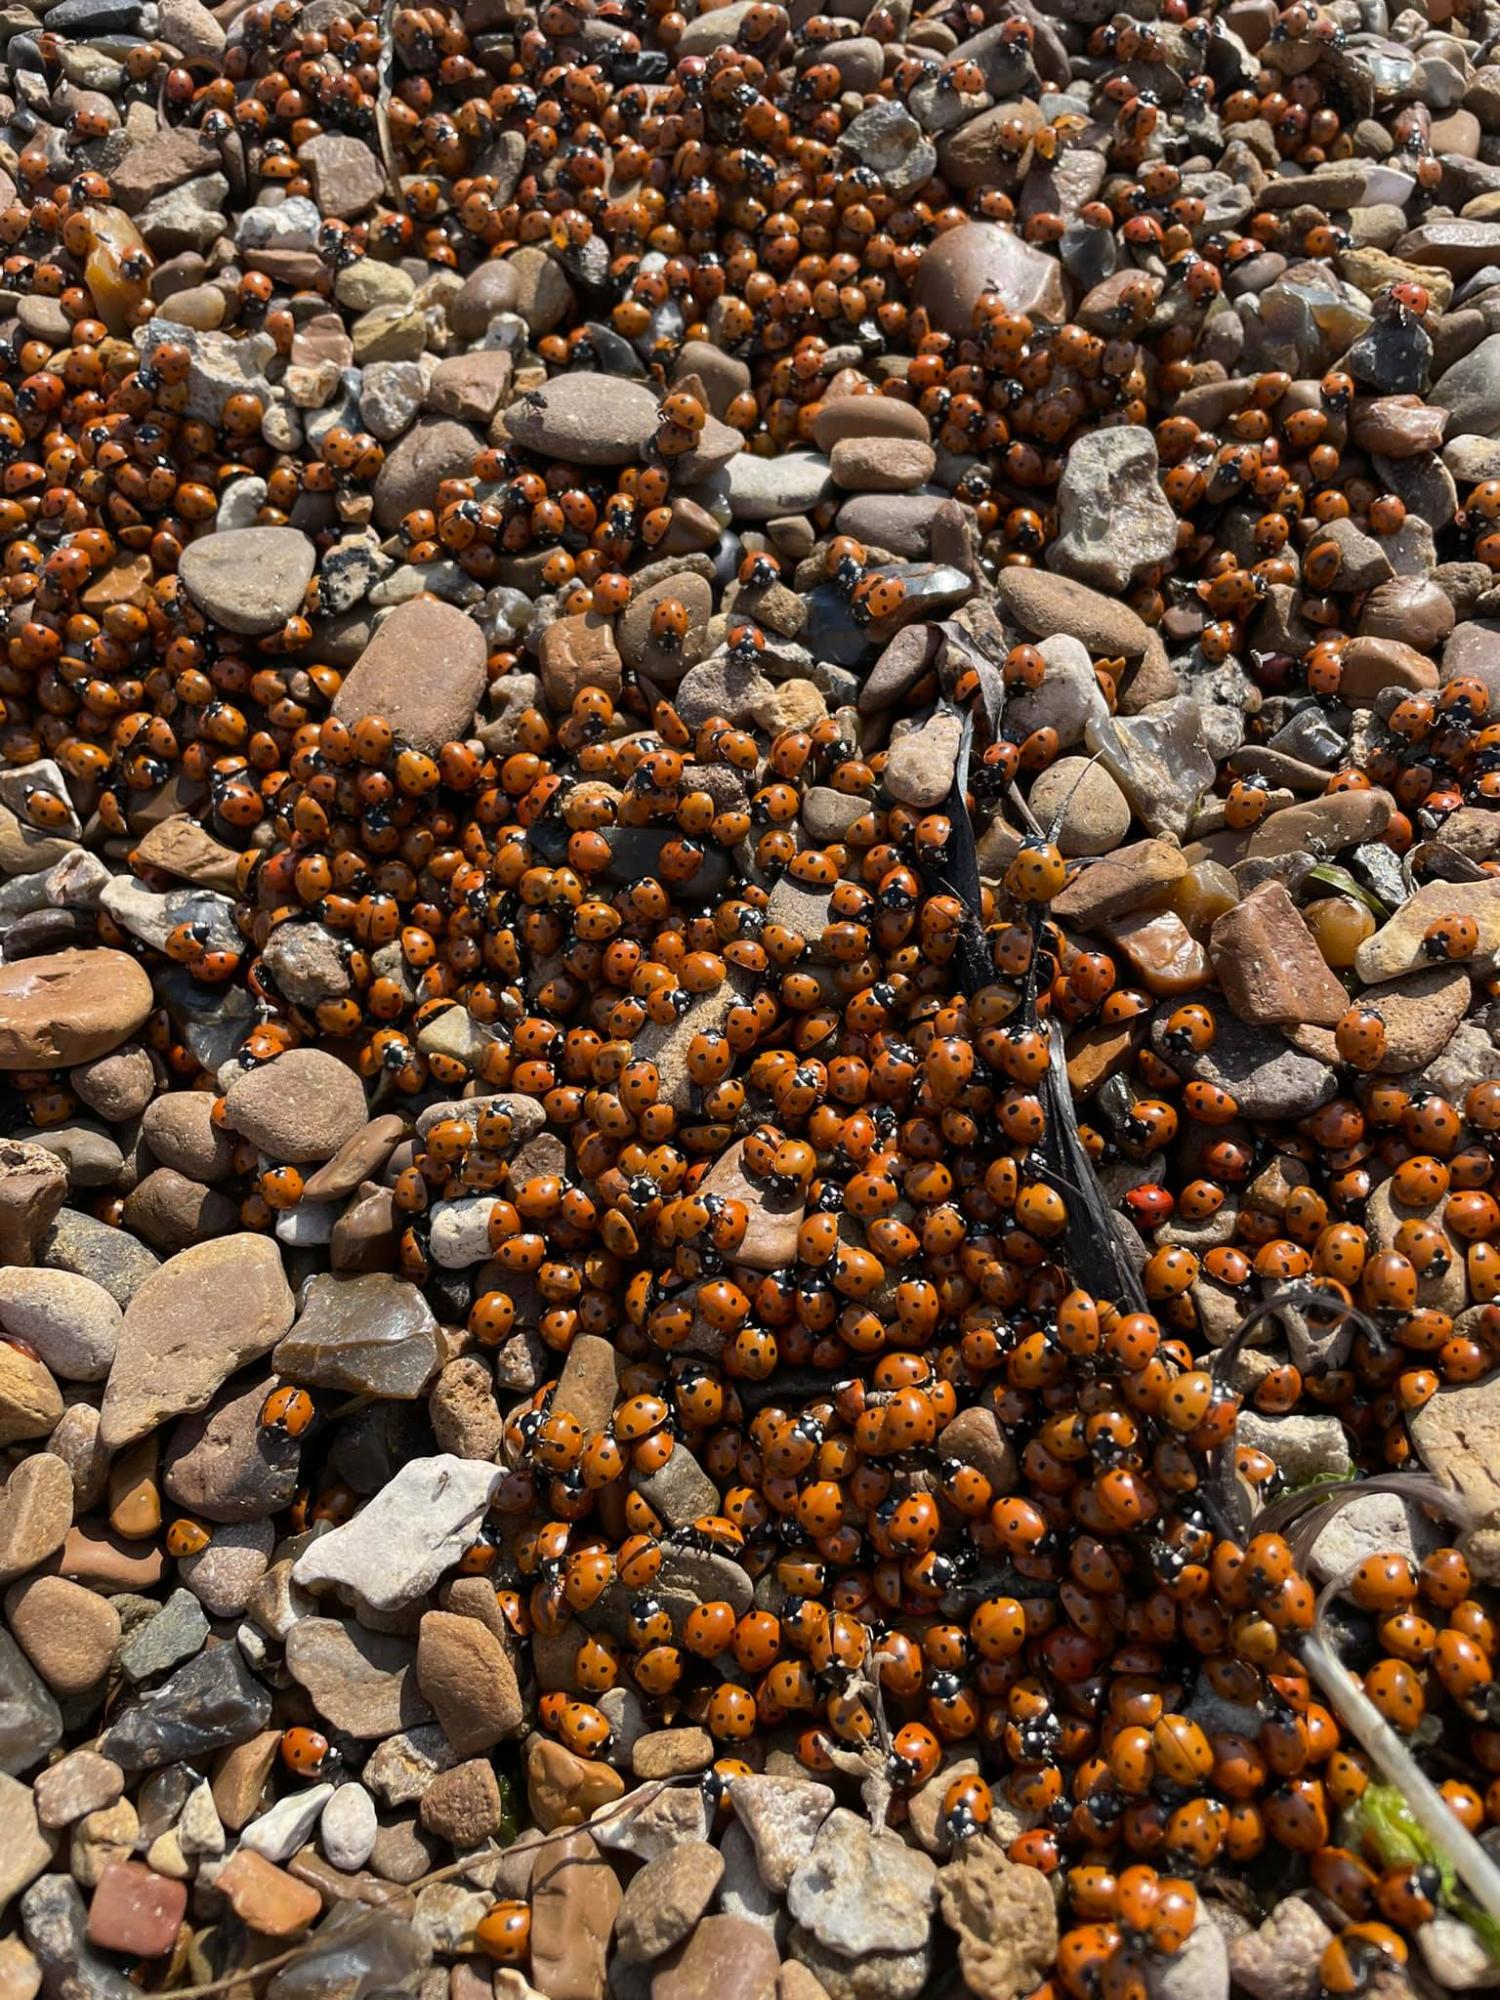 Пляжі Одеси атакували полчища жуків! Погляньте на ці фото